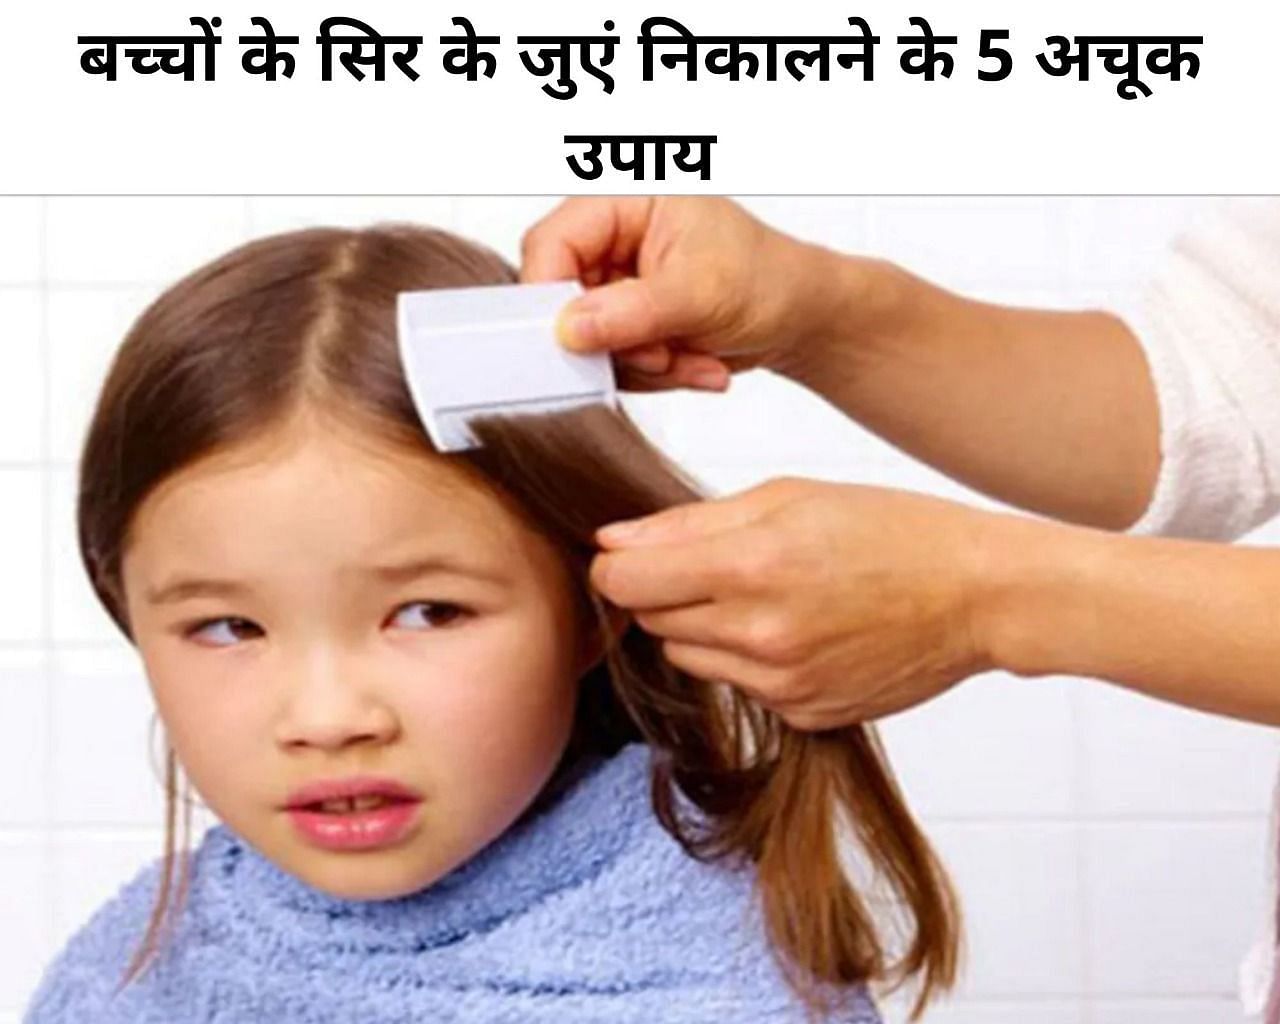 बच्चों के सिर के जुएं निकालने के 5 अचूक उपाय (फोटो - sportskeedaहिंदी)